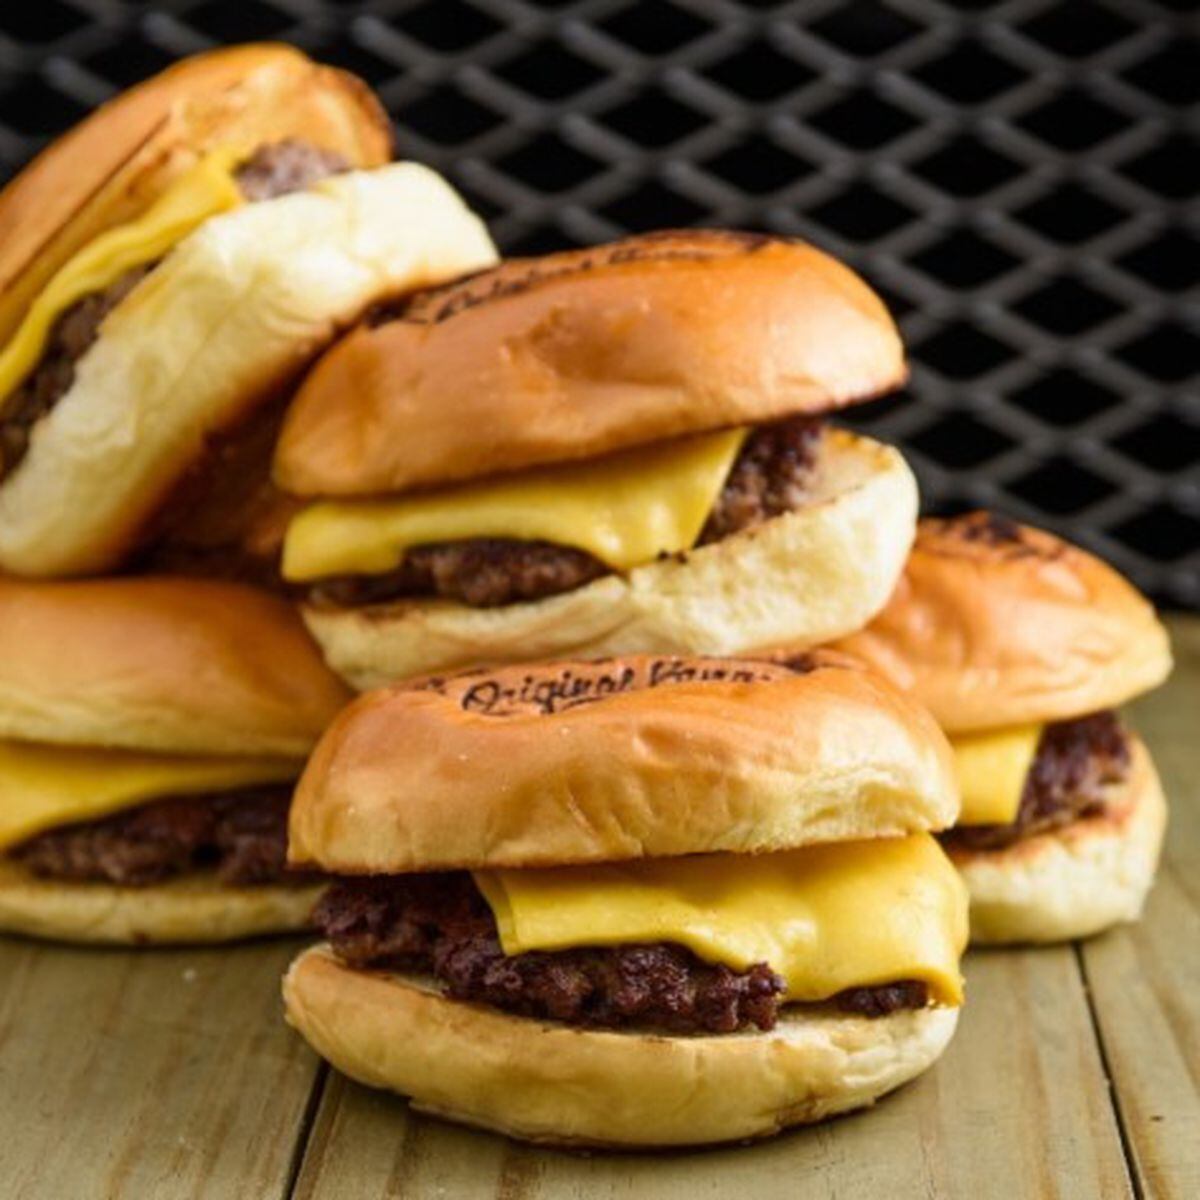 Burger King lança cachorro-quente de carne bovina e divulga com